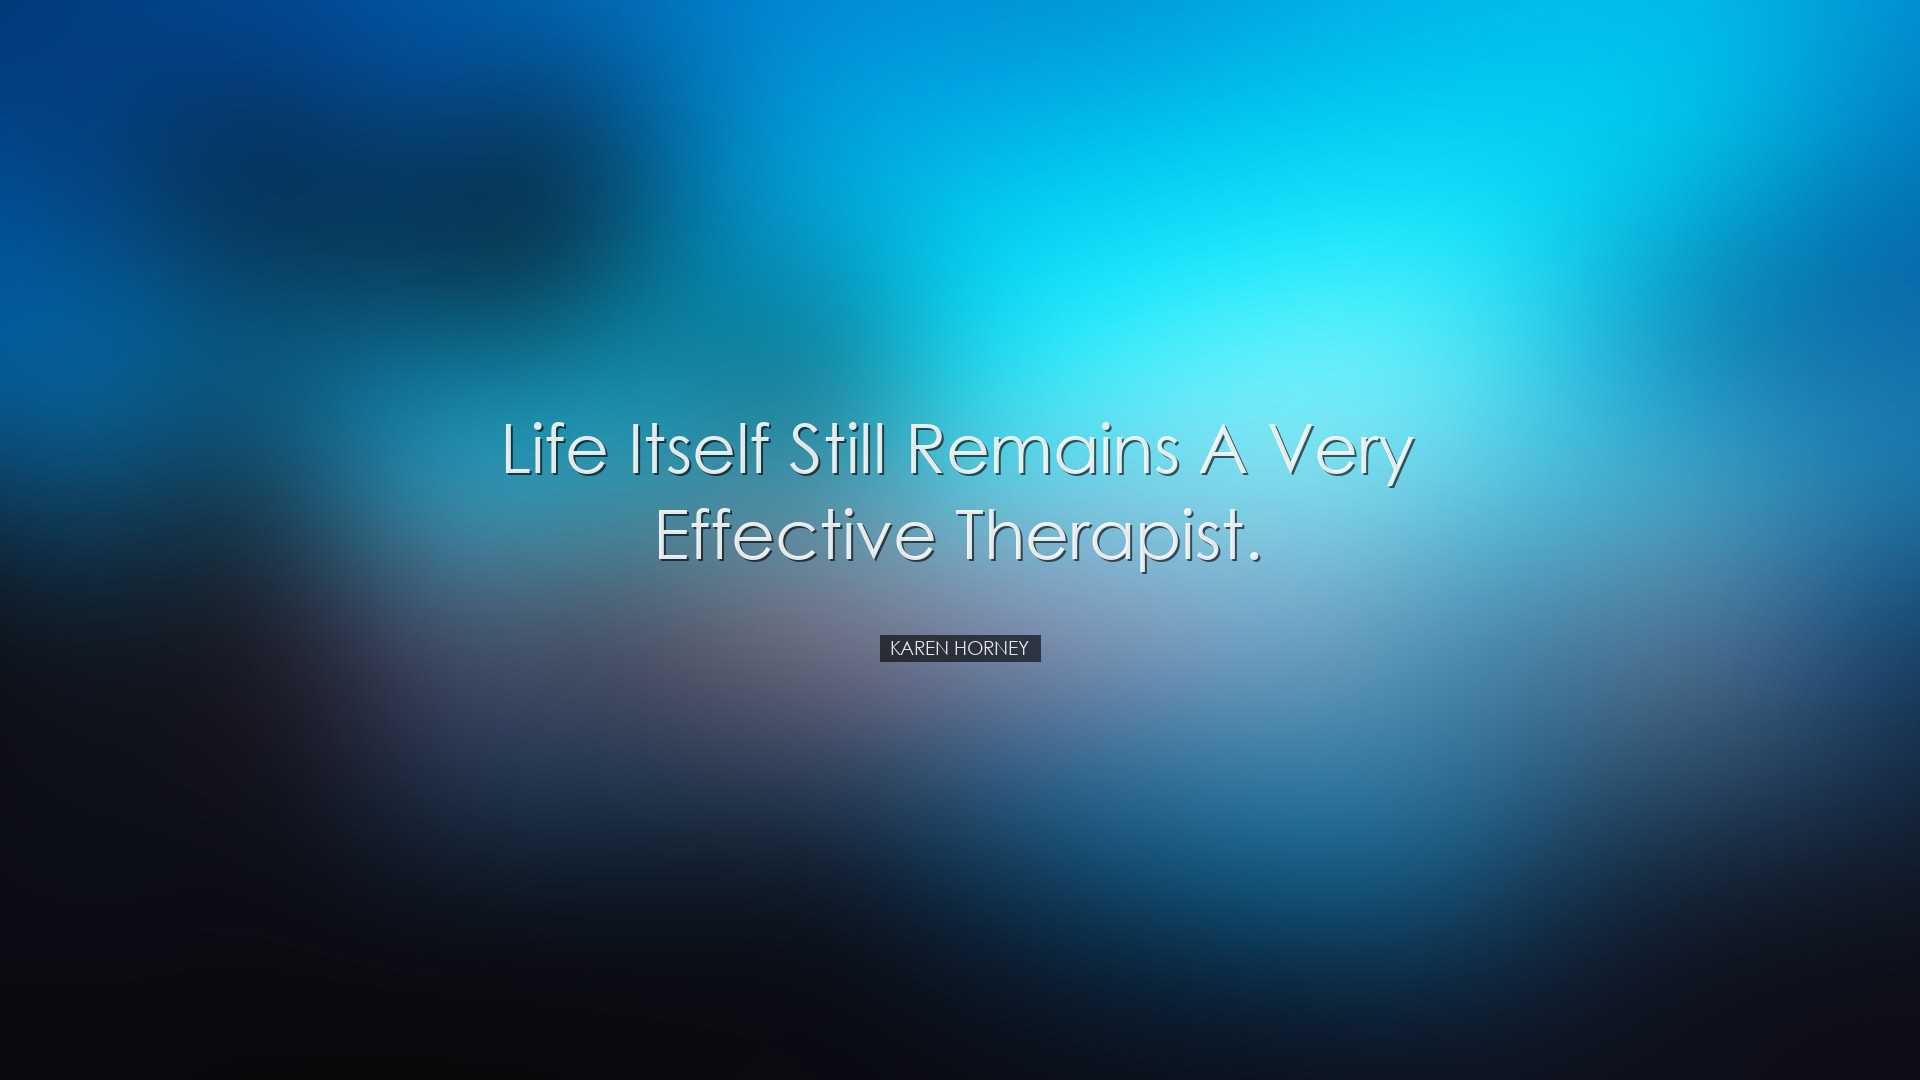 Life itself still remains a very effective therapist. - Karen Horn